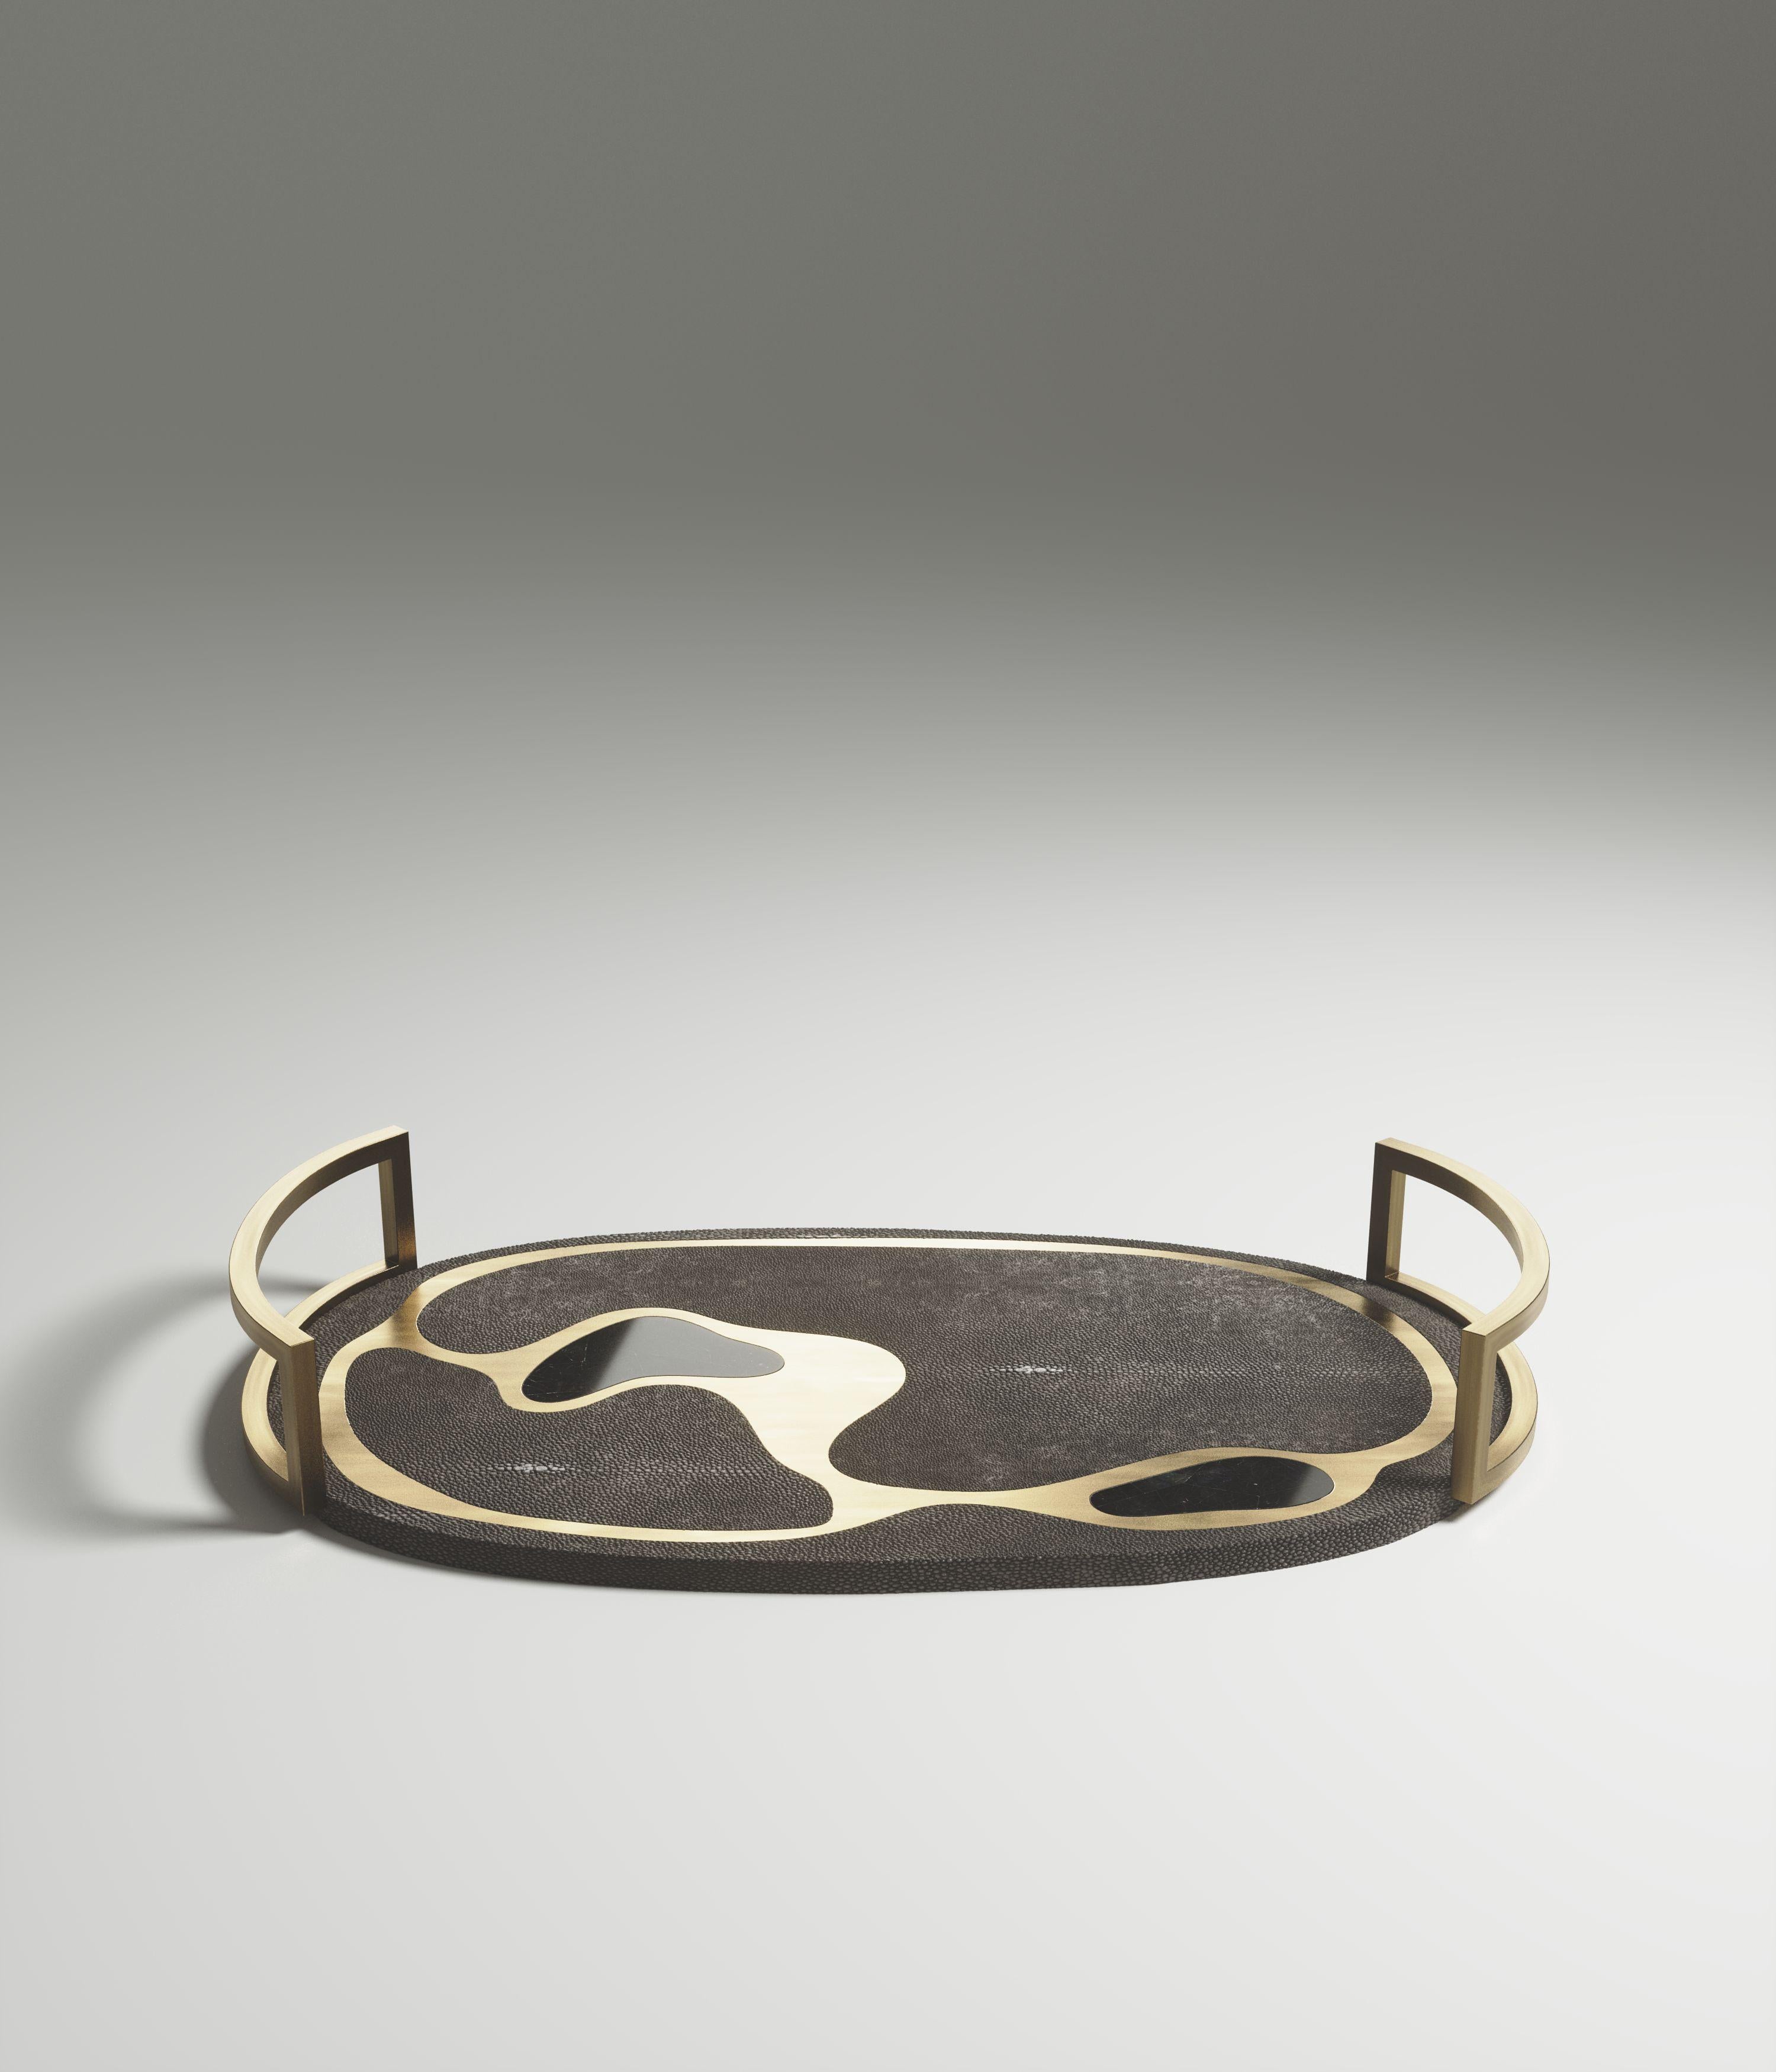 Das ovale Tablett Mask von Kifu Paris ist ein vielseitiges und organisches Stück. Die amorphe Platte und der Sockel sind mit einer Mischung aus kohlschwarzem Chagrin, schwarzer Muschel und Messing in Bronze-Patina eingelegt. Dieses Stück wurde von